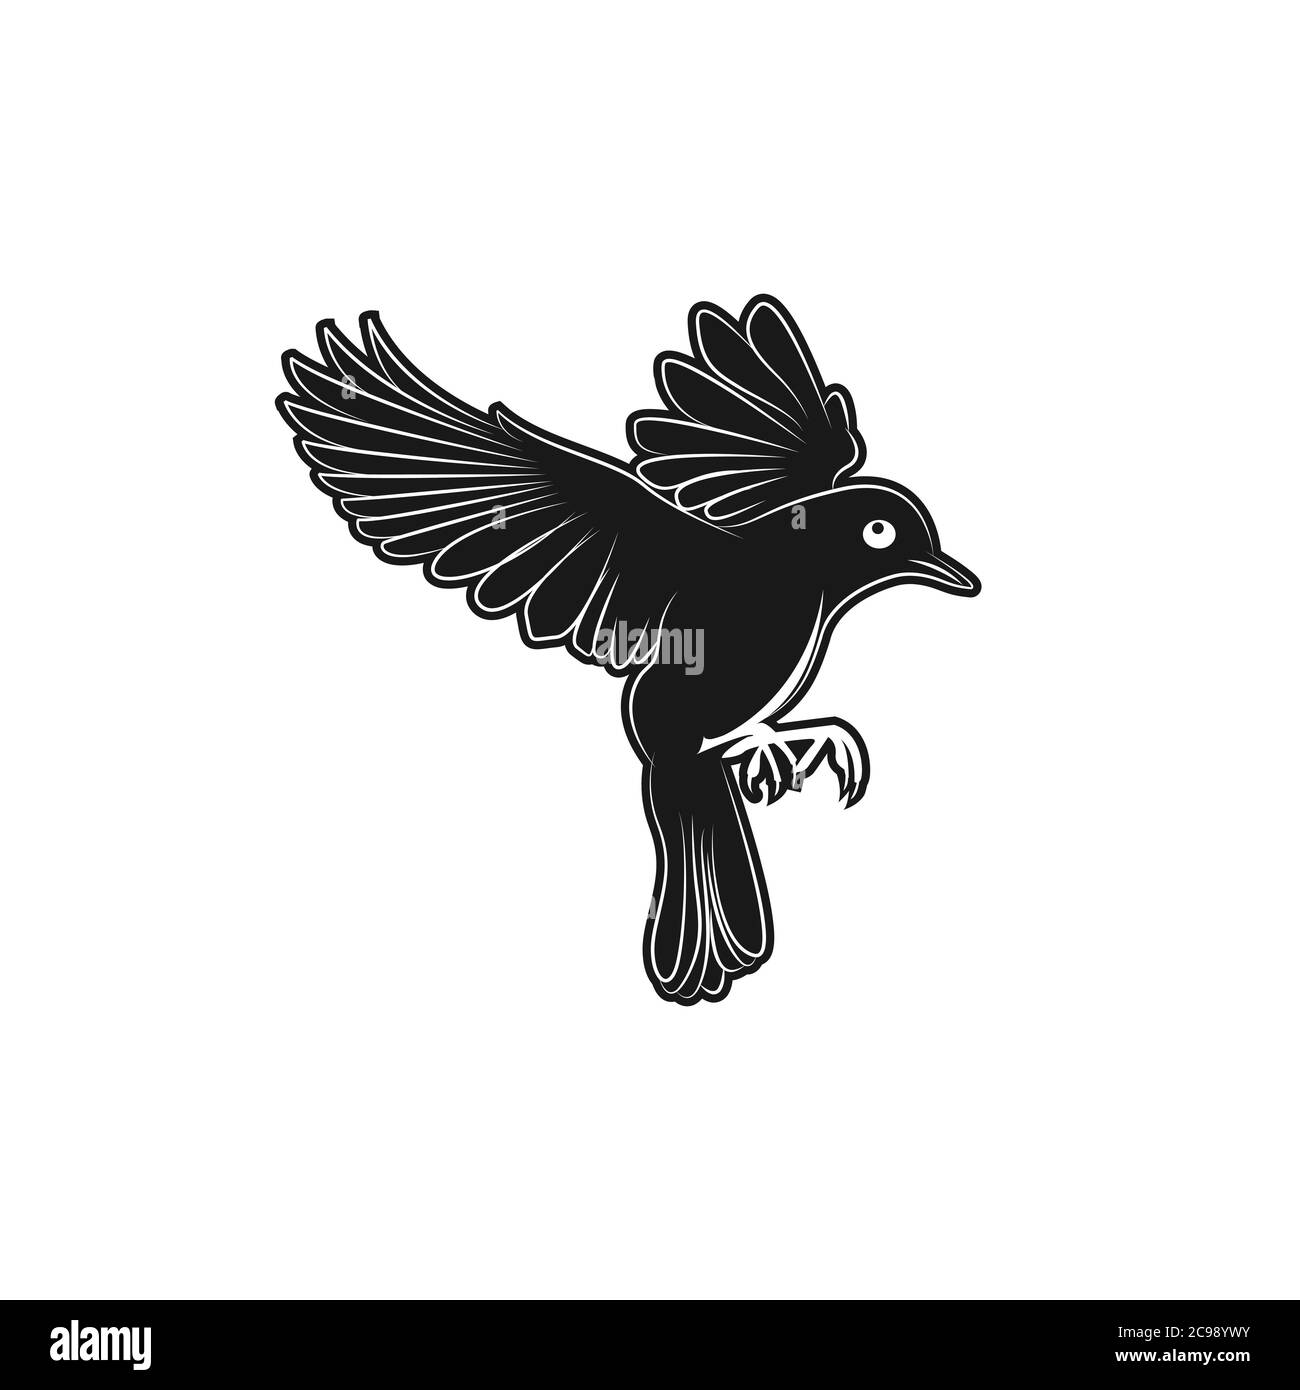 Astratto volante uccello logo disegno profilo style.Flying uccello foglia ramo santo logo vettore arte illustrazione.EPS 10 Illustrazione Vettoriale